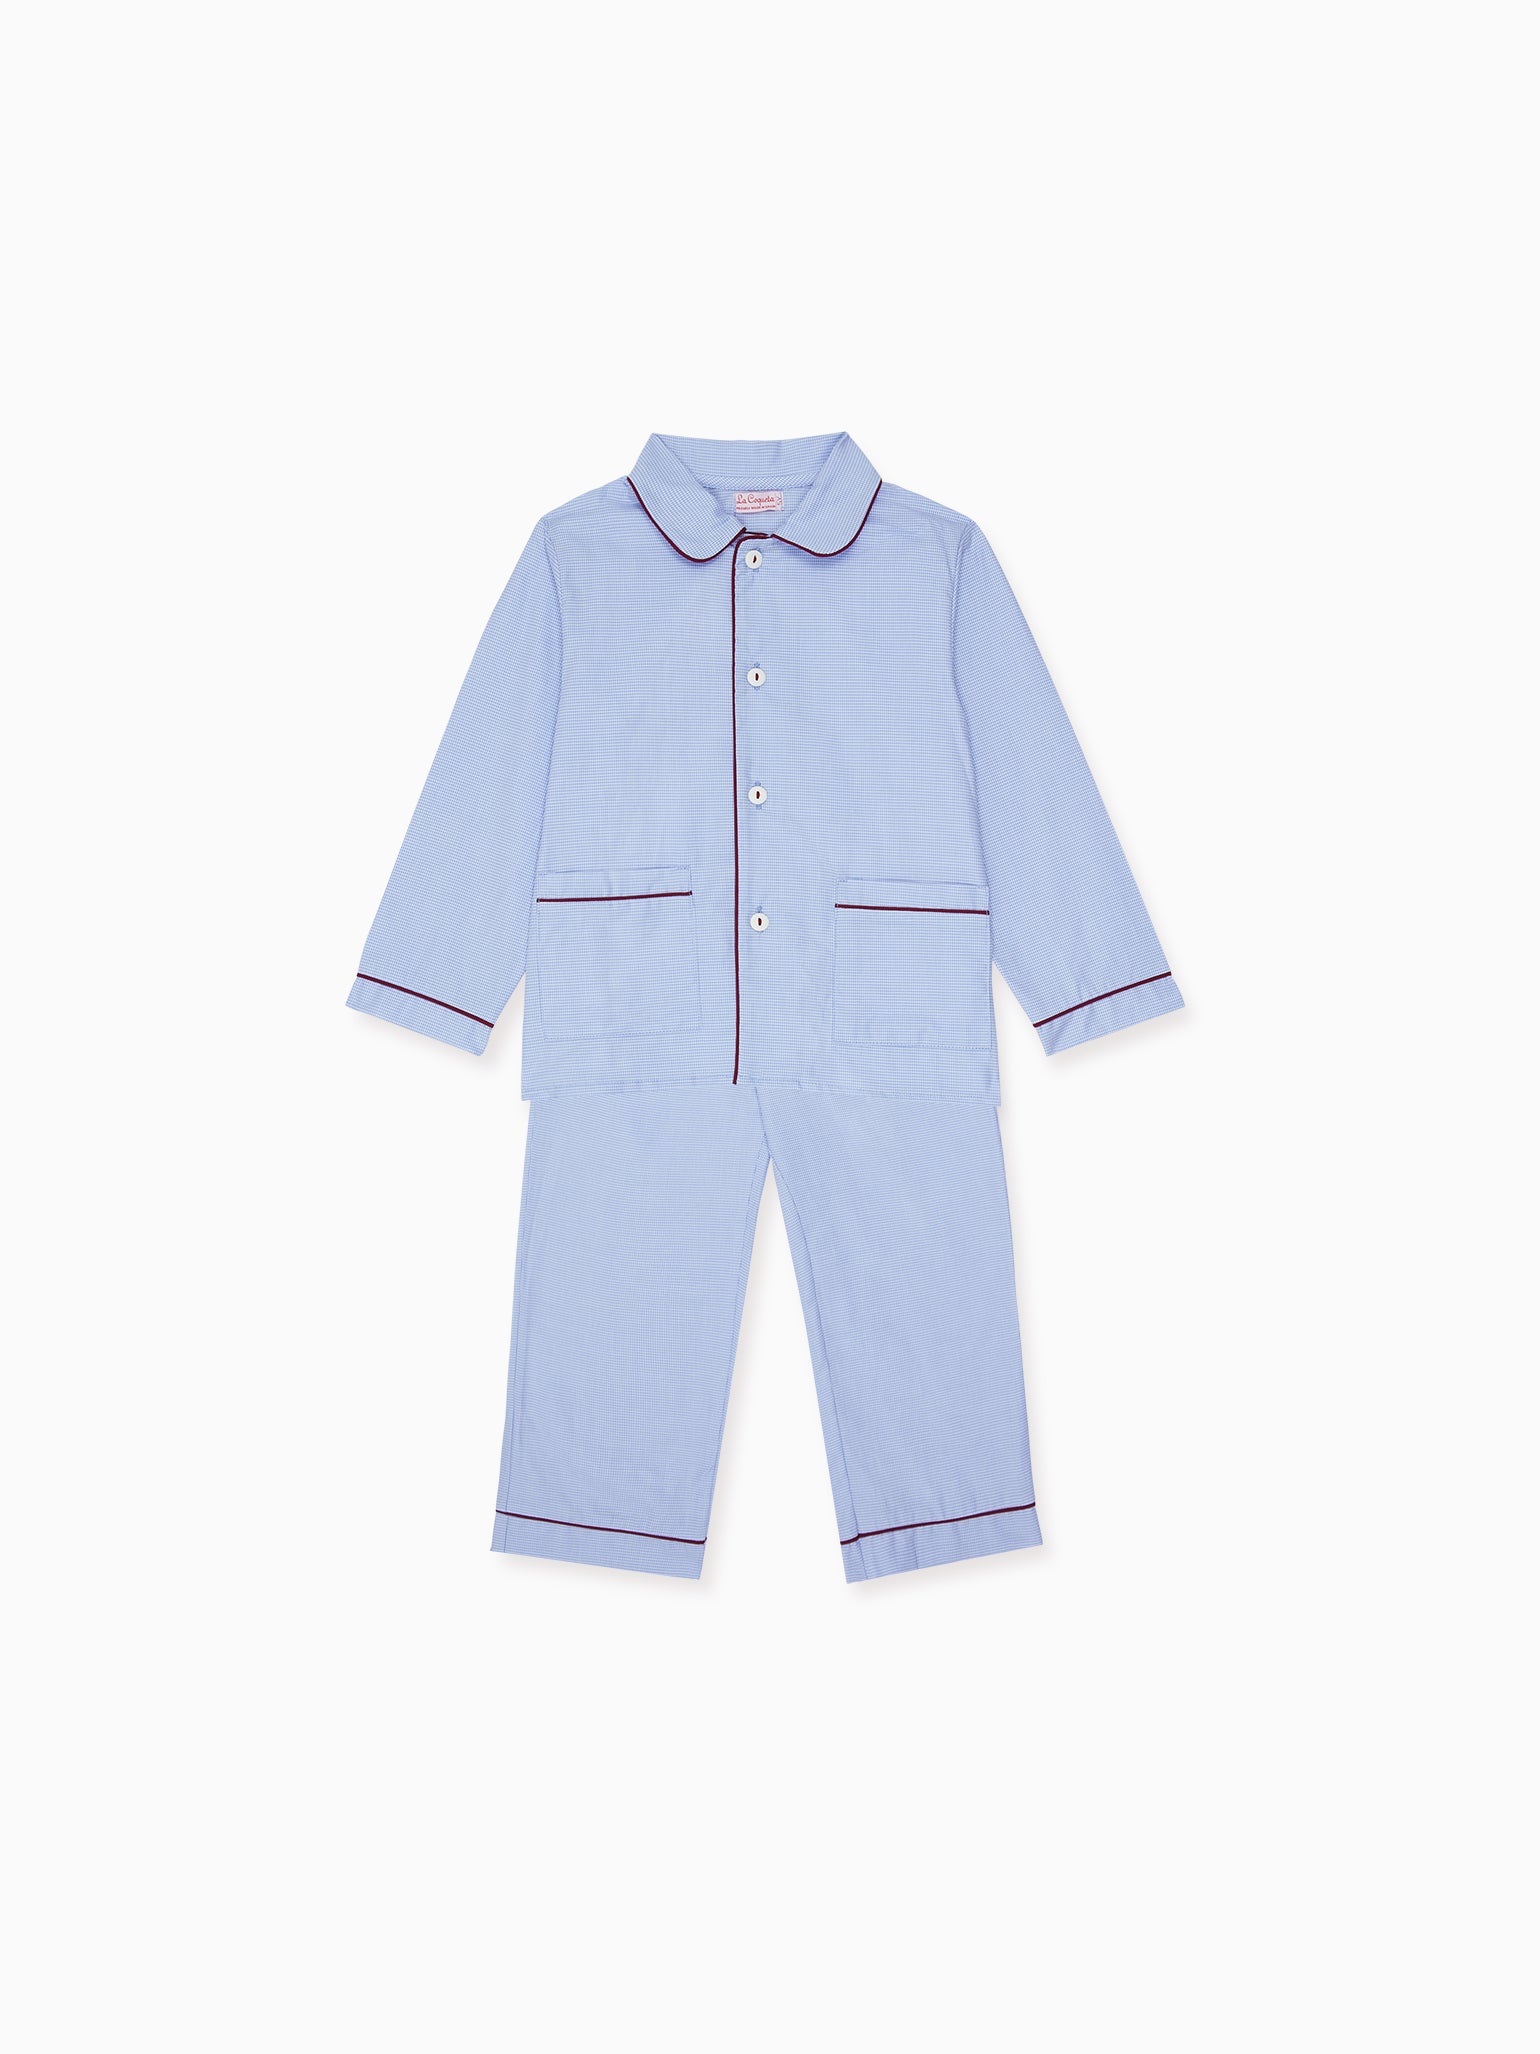 Blue Romera Kids Pyjamas